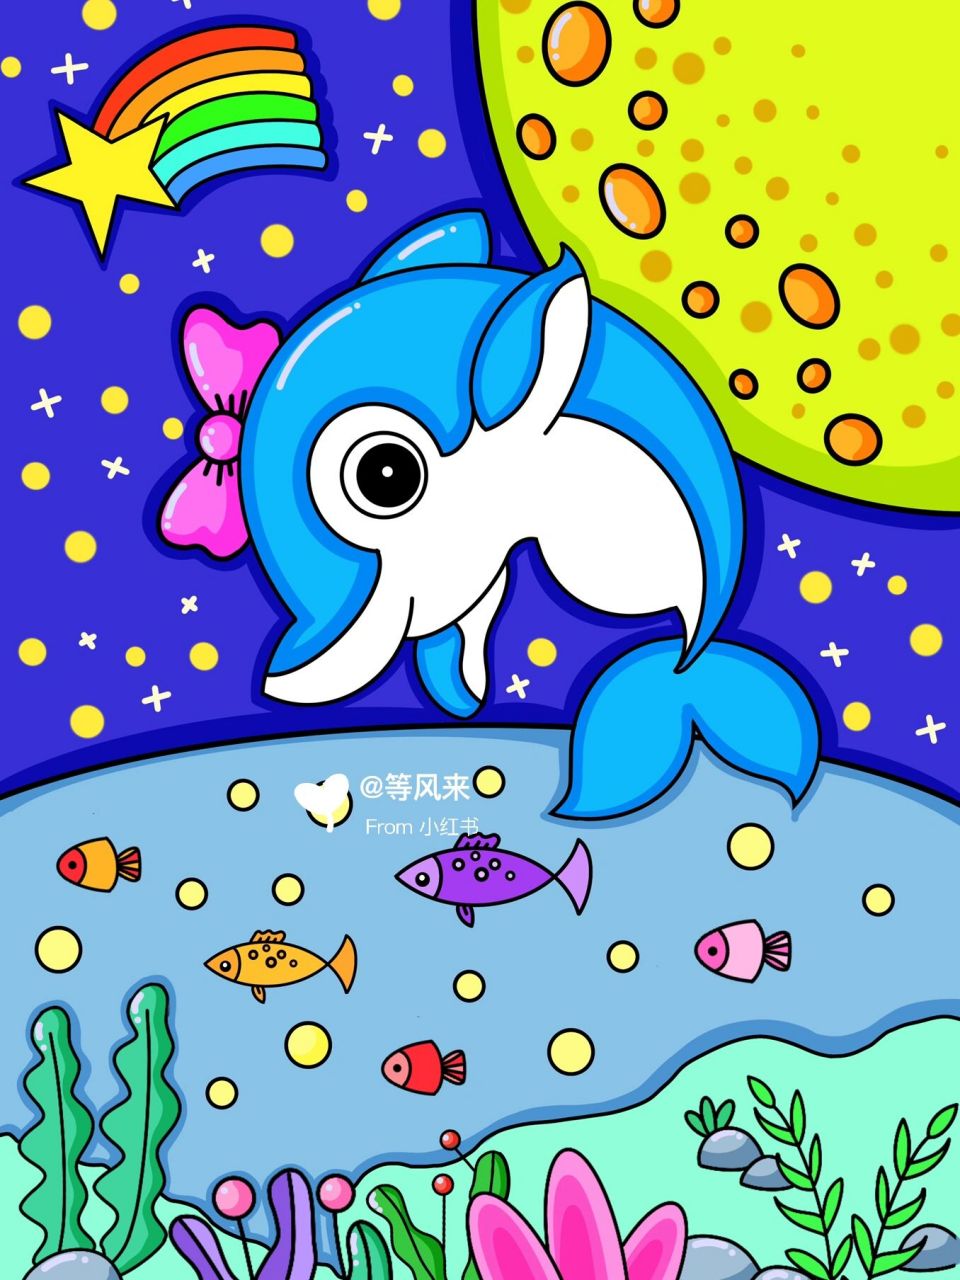 海豚简笔画彩色 可爱图片